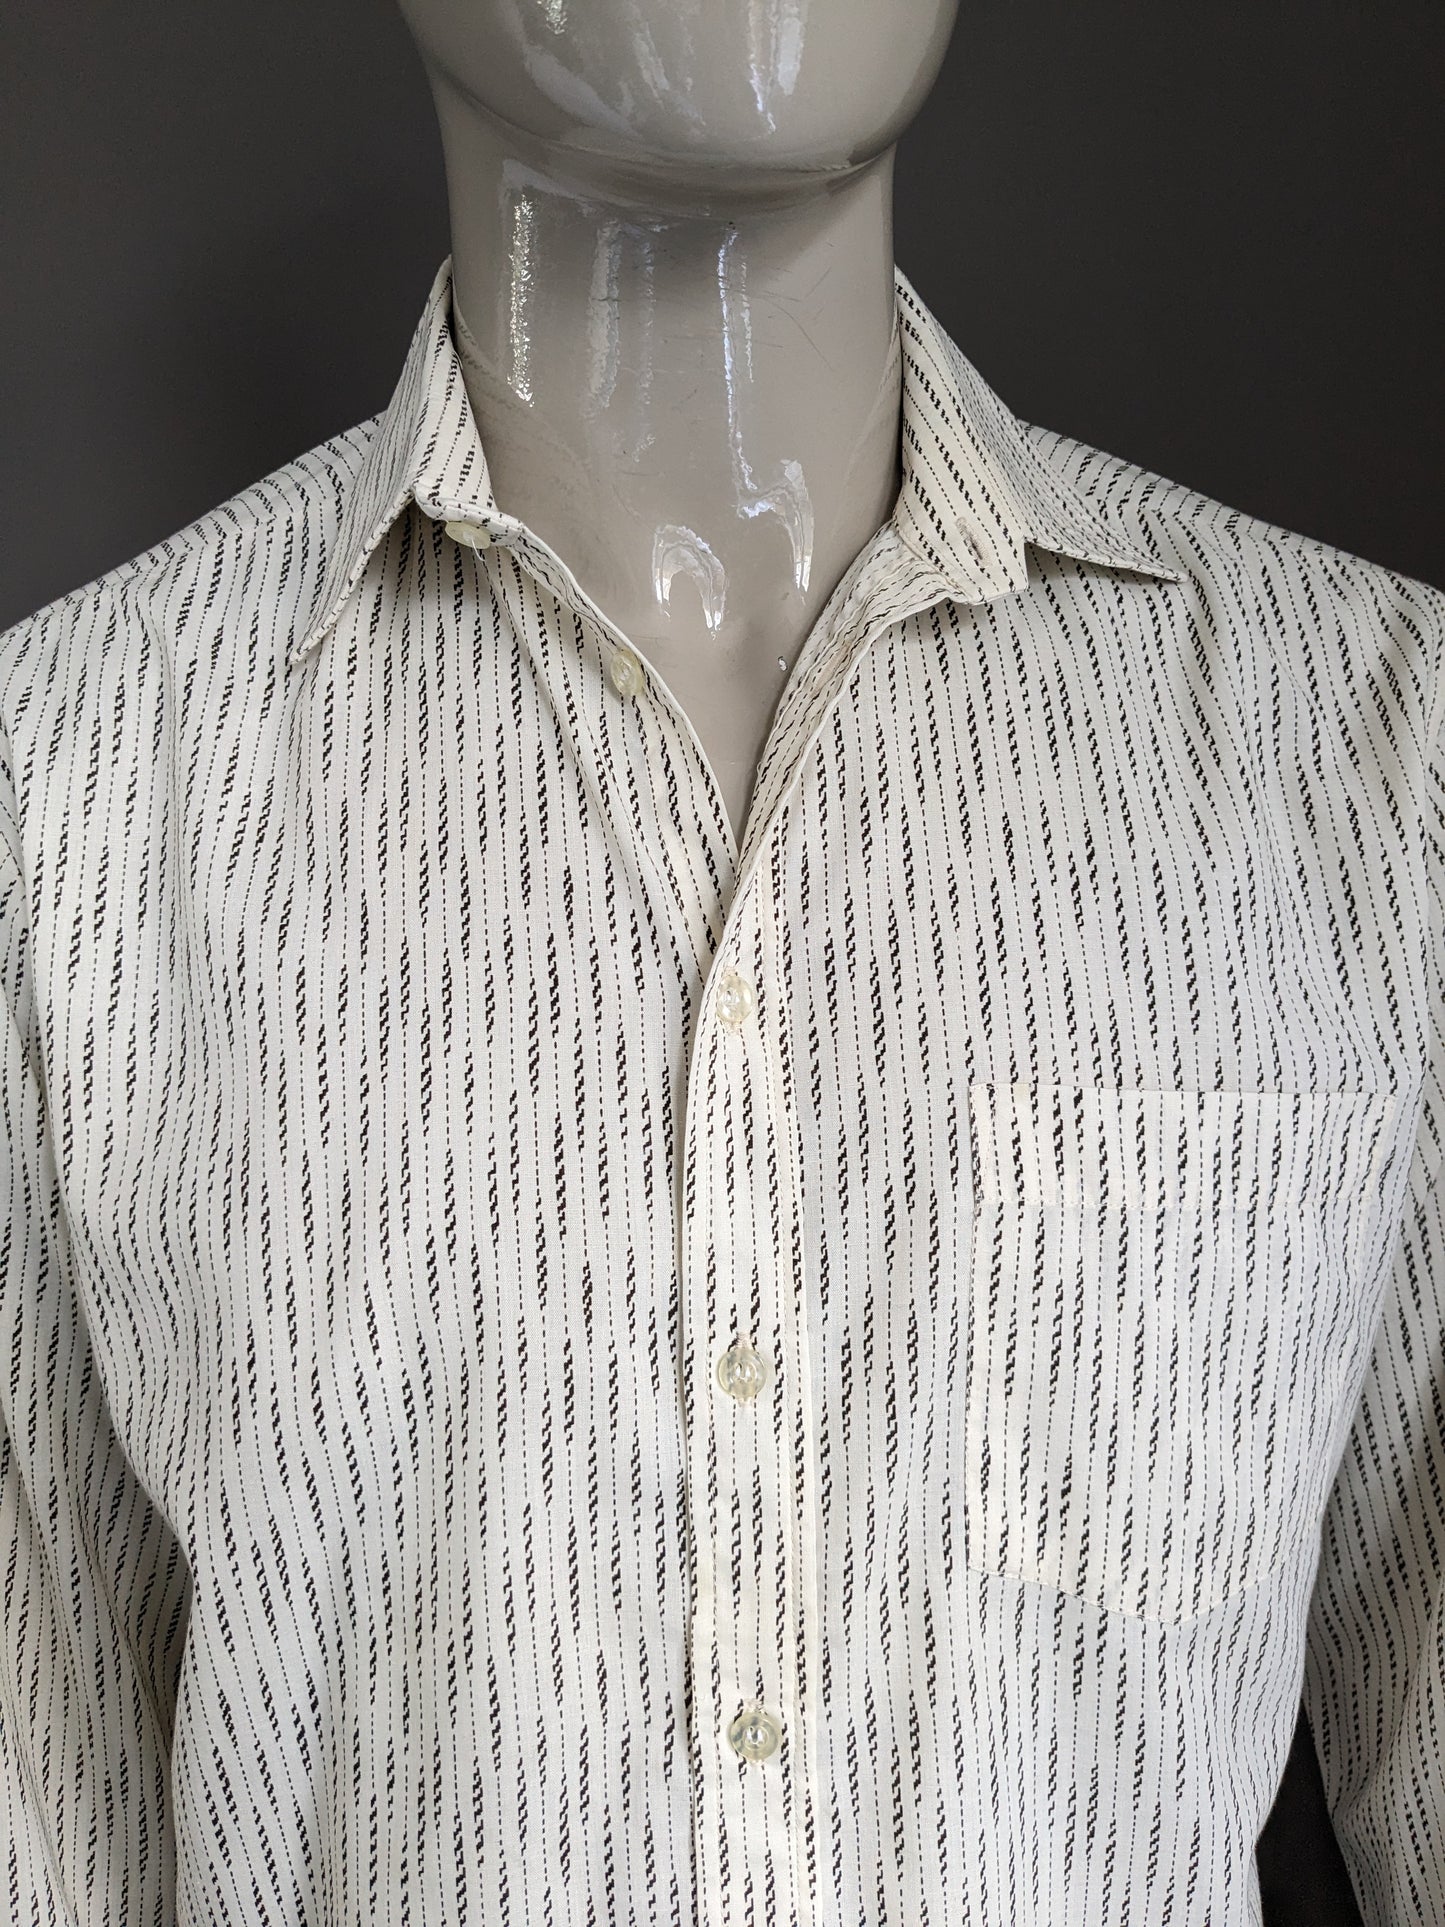 Vintage Fekon 70's shirt. Brown beige print. Size XL.